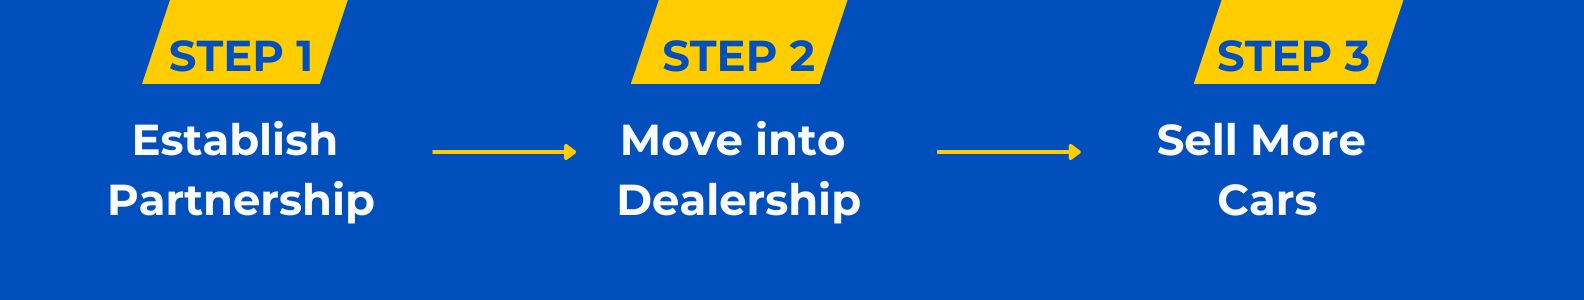 Dealership Website Banner Steps